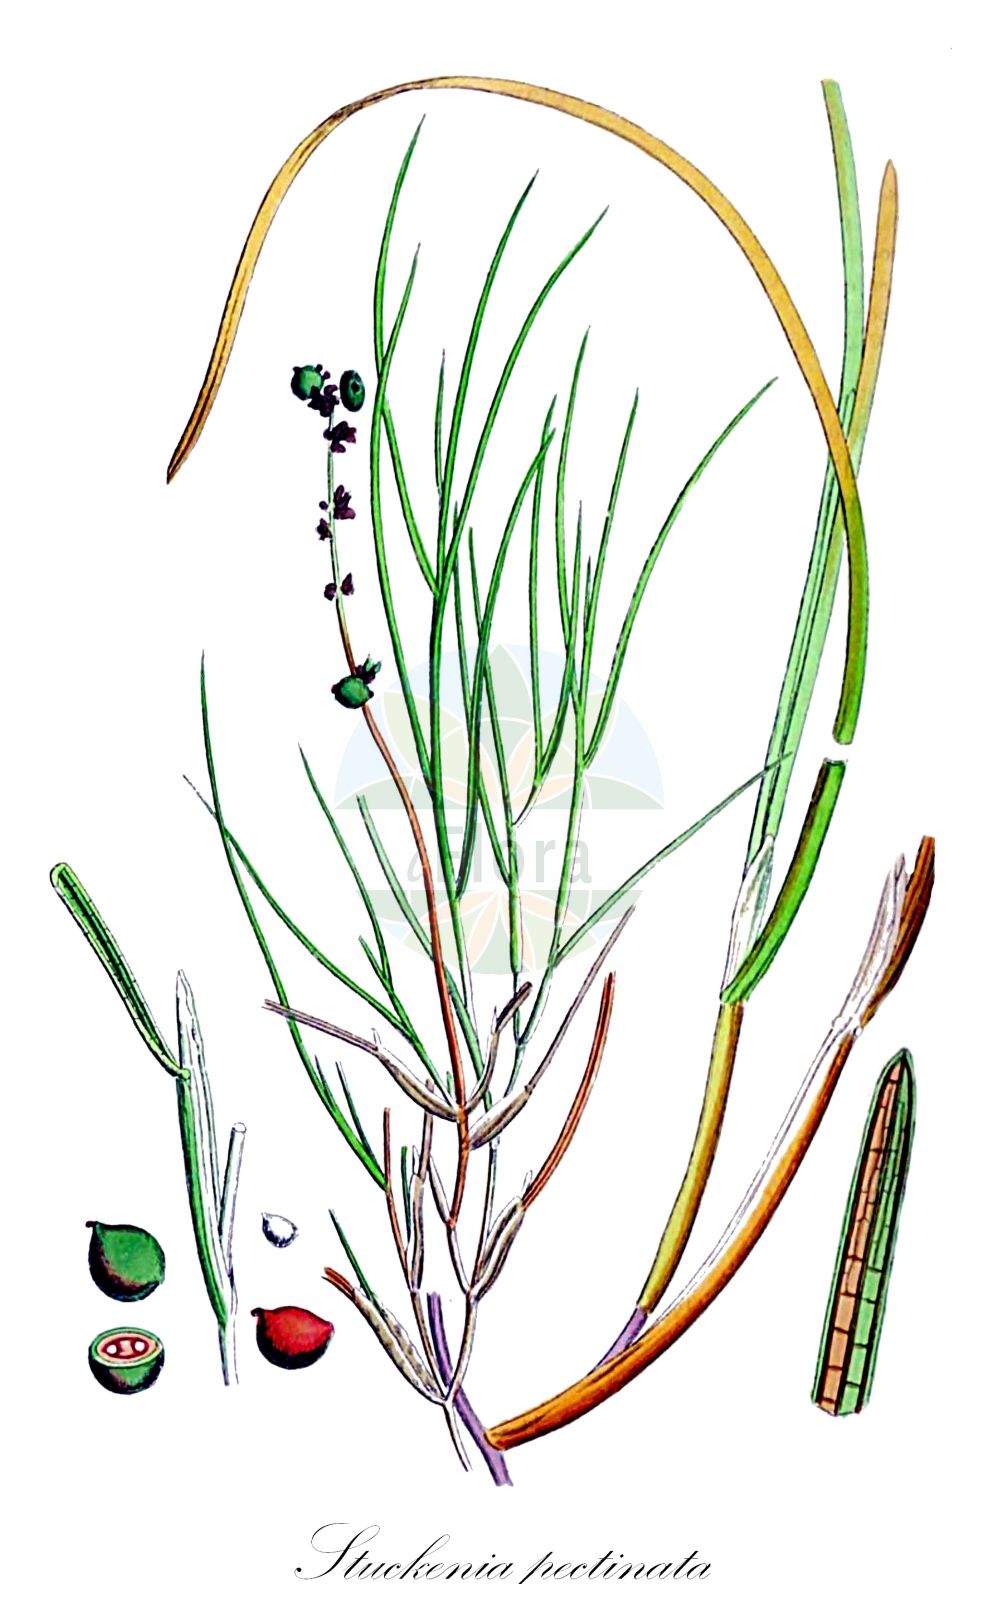 Historische Abbildung von Stuckenia pectinata (Kamm-Laichkraut - Fennel Pondweed). Das Bild zeigt Blatt, Bluete, Frucht und Same. ---- Historical Drawing of Stuckenia pectinata (Kamm-Laichkraut - Fennel Pondweed). The image is showing leaf, flower, fruit and seed.(Stuckenia pectinata,Kamm-Laichkraut,Fennel Pondweed,Coleogeton pectinatus,Potamogeton balatonicus,Potamogeton helveticus,Potamogeton interruptus,Potamogeton marinus,Potamogeton pectinatus,Potamogeton zosteraceus,Stuckenia chakassiensis,Stuckenia marina,Stuckenia mongolica,Stuckenia pectinata,Stuckenia zosteracea,Kamm-Laichkraut,Fennel Pondweed,Fennel-leaved Pondweed,Stuckenia,Laichkraut,Pondweed,Potamogetonaceae,Laichkrautgewächse,Pondweed family,Blatt,Bluete,Frucht,Same,leaf,flower,fruit,seed,Sowerby (1790-1813))